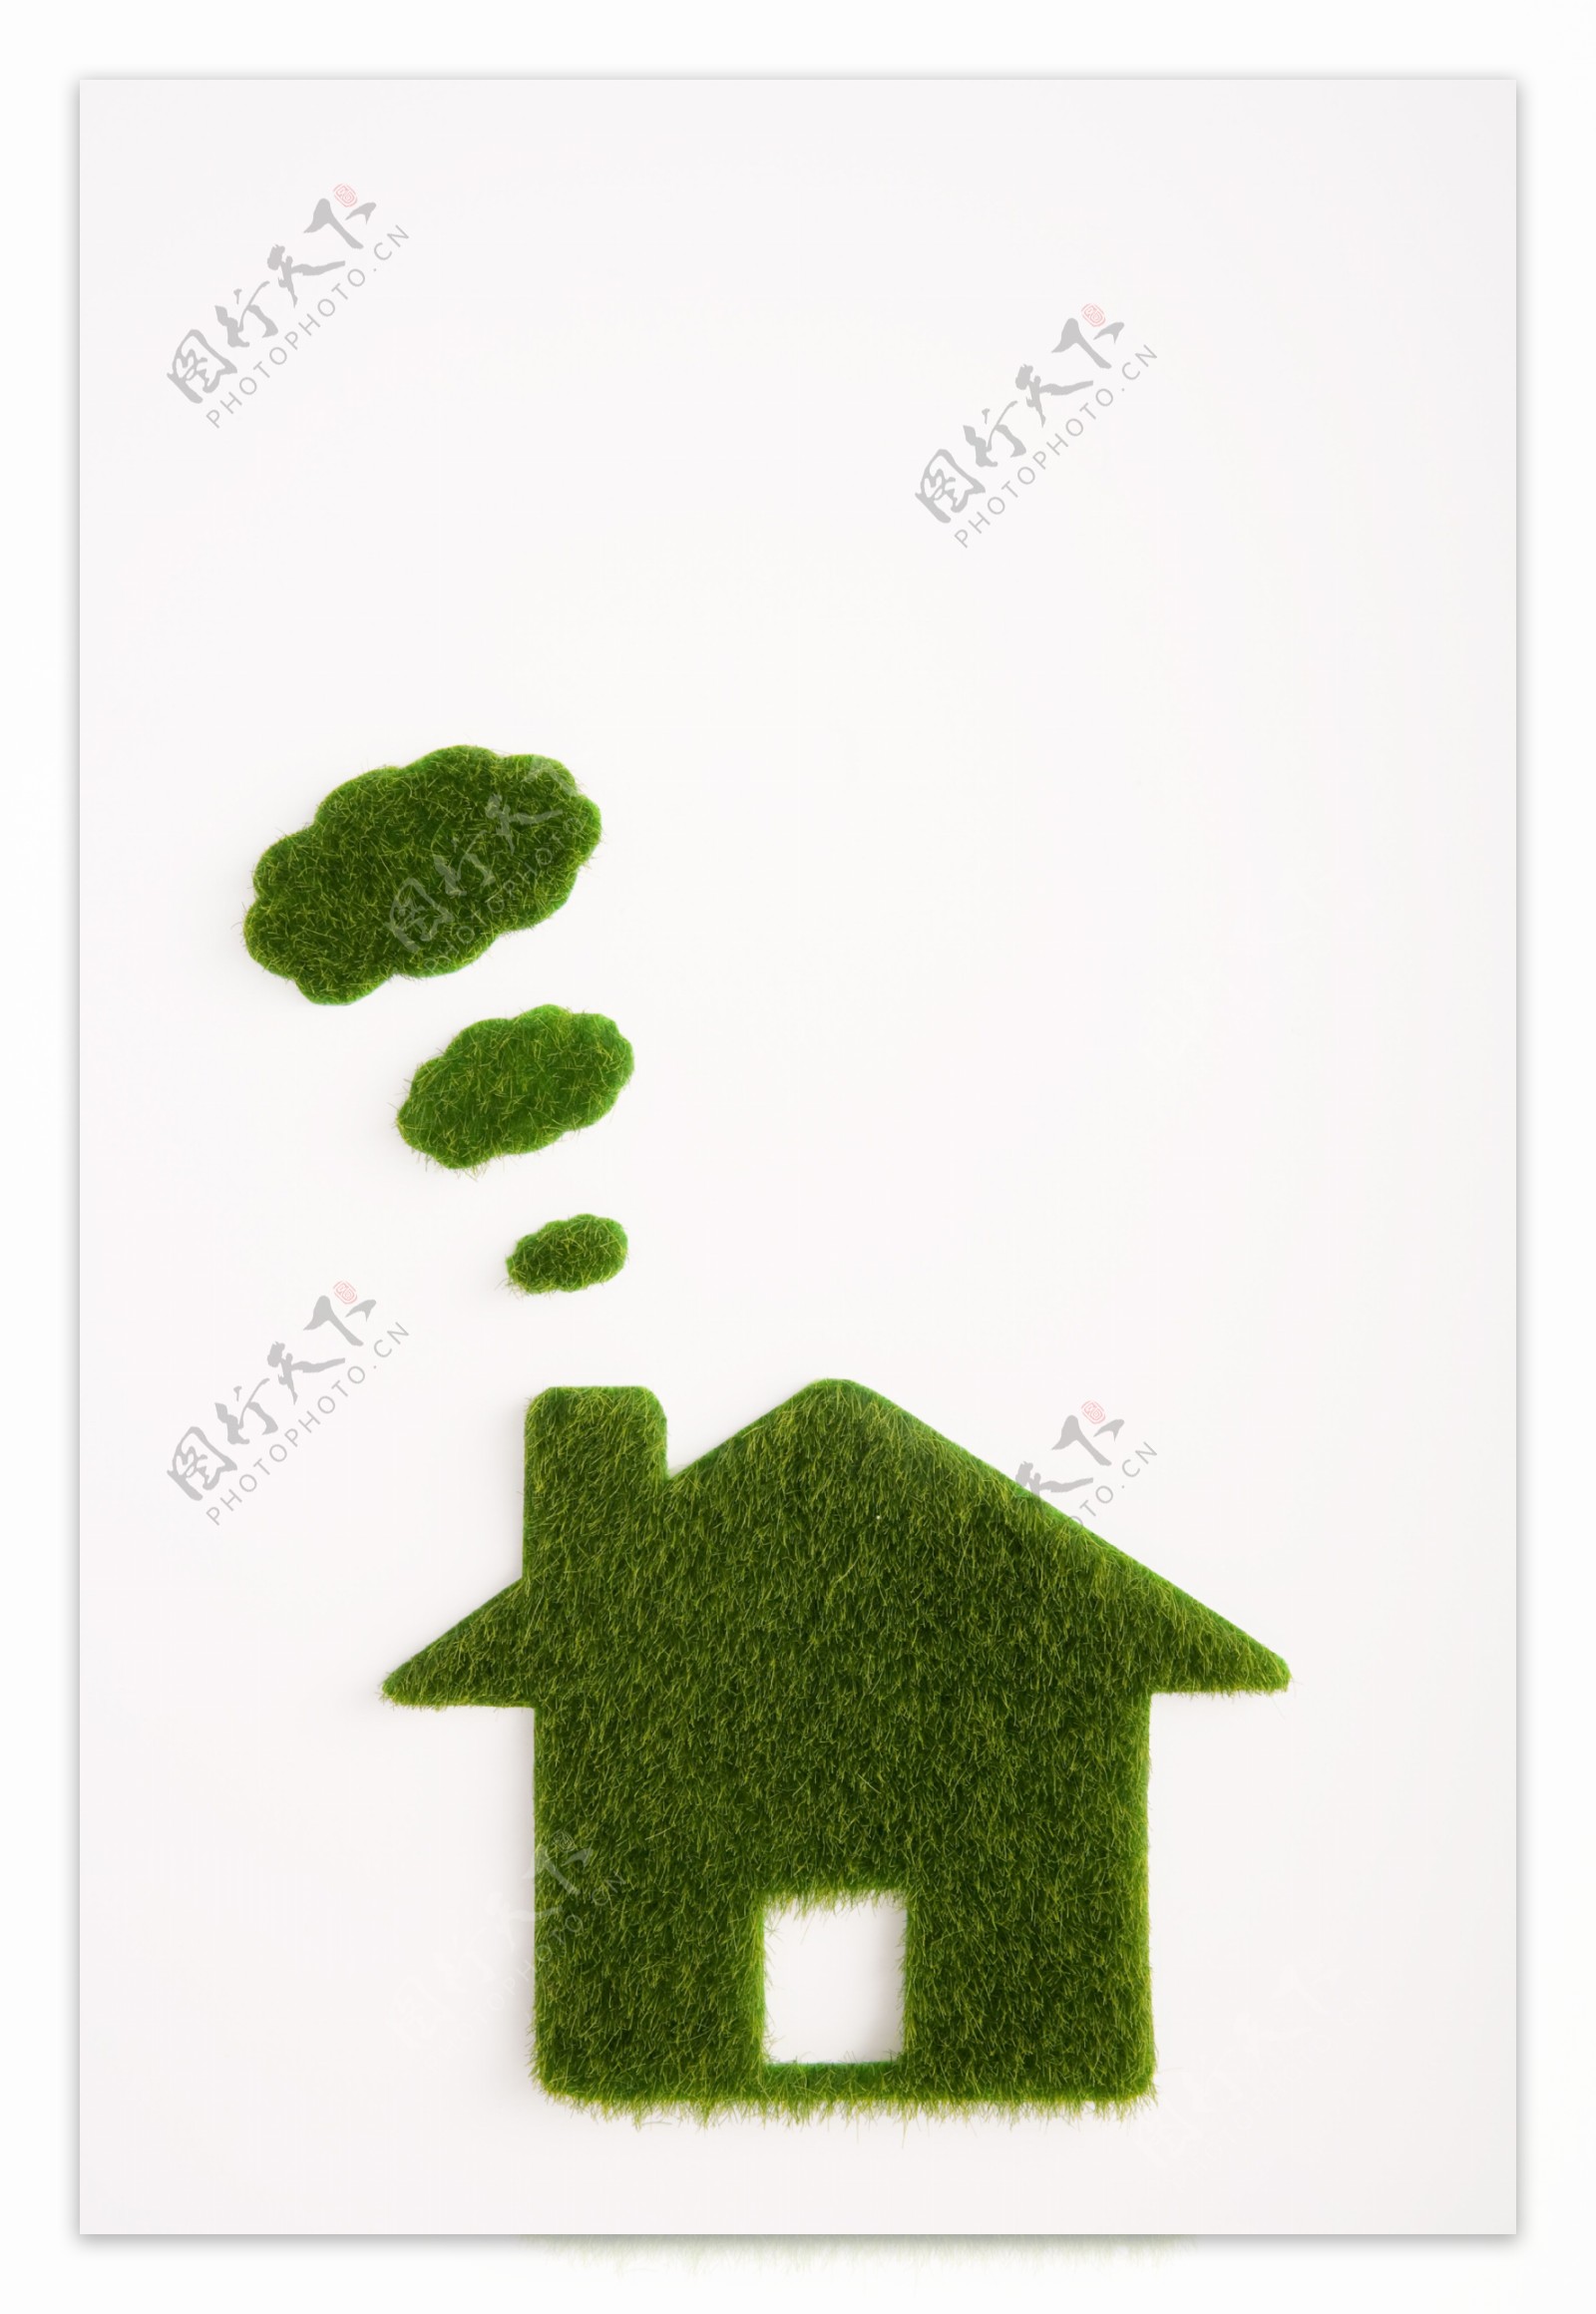 绿草组成的房子创意图片